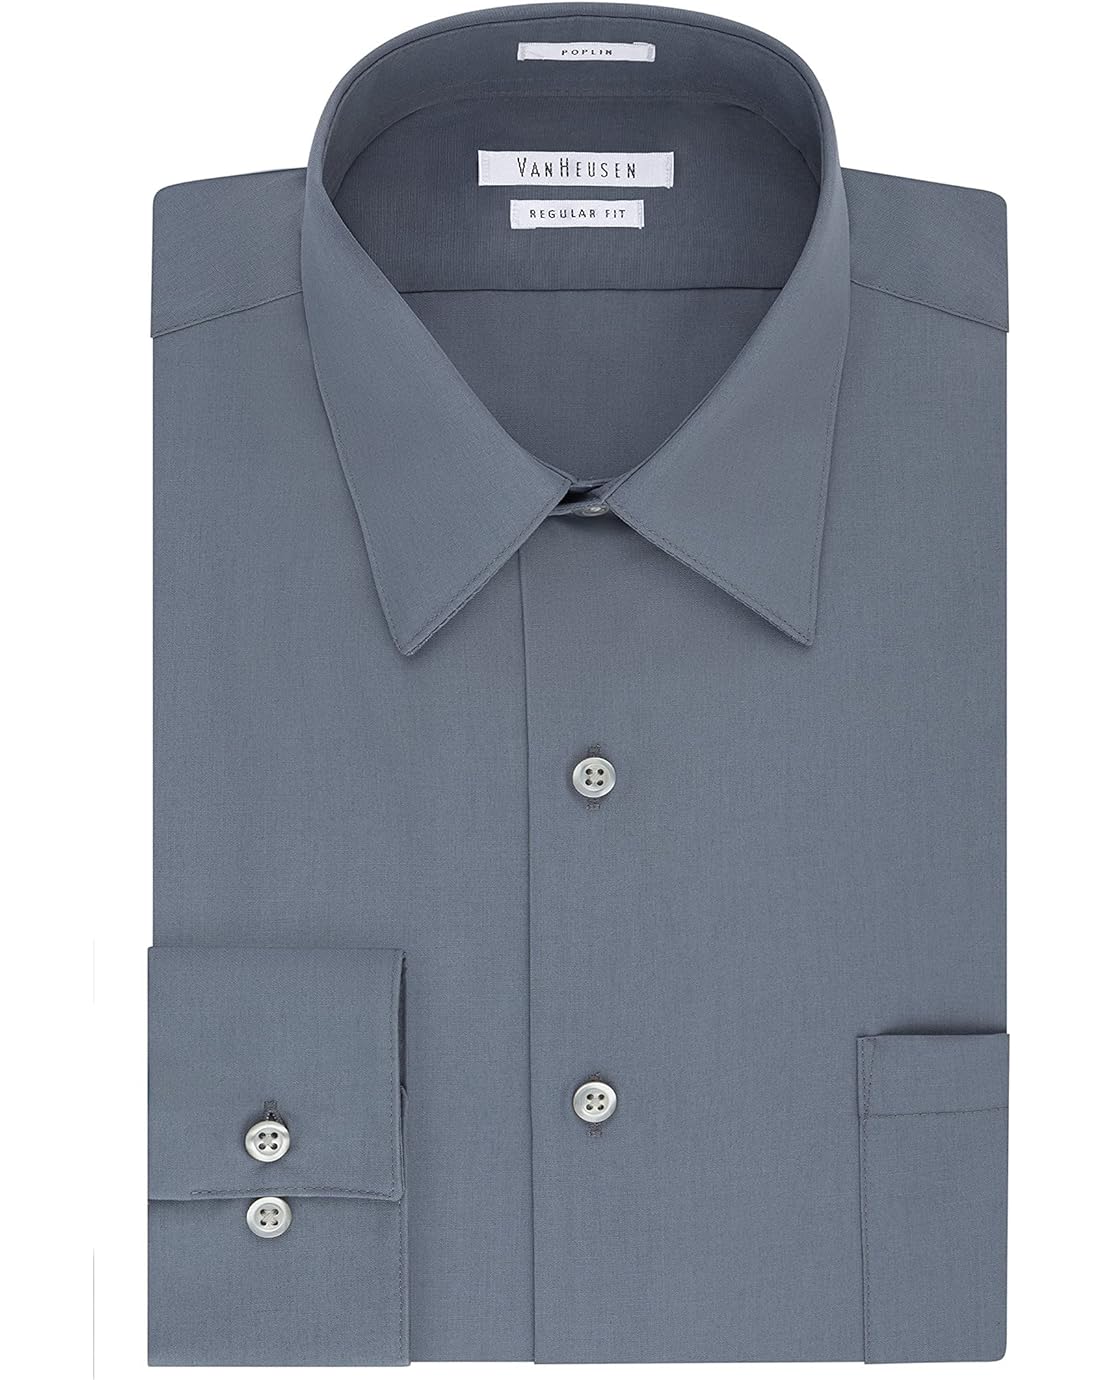 Van Heusen Mens Dress Shirt Regular Fit Poplin Solid